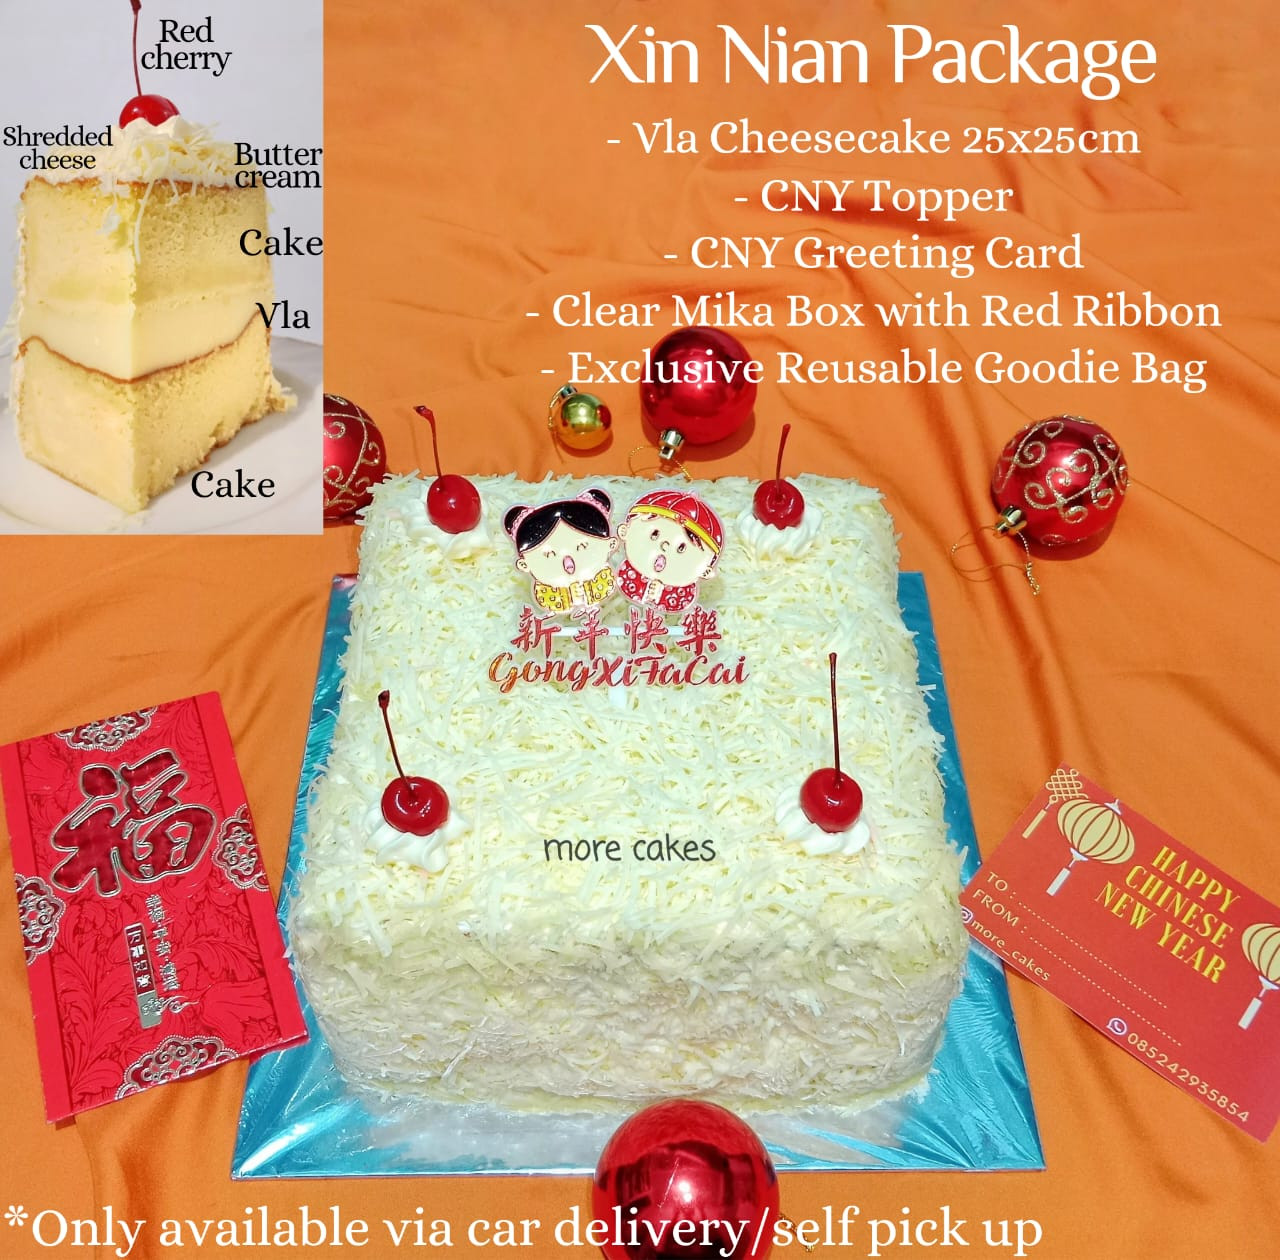 Xin Nian Package